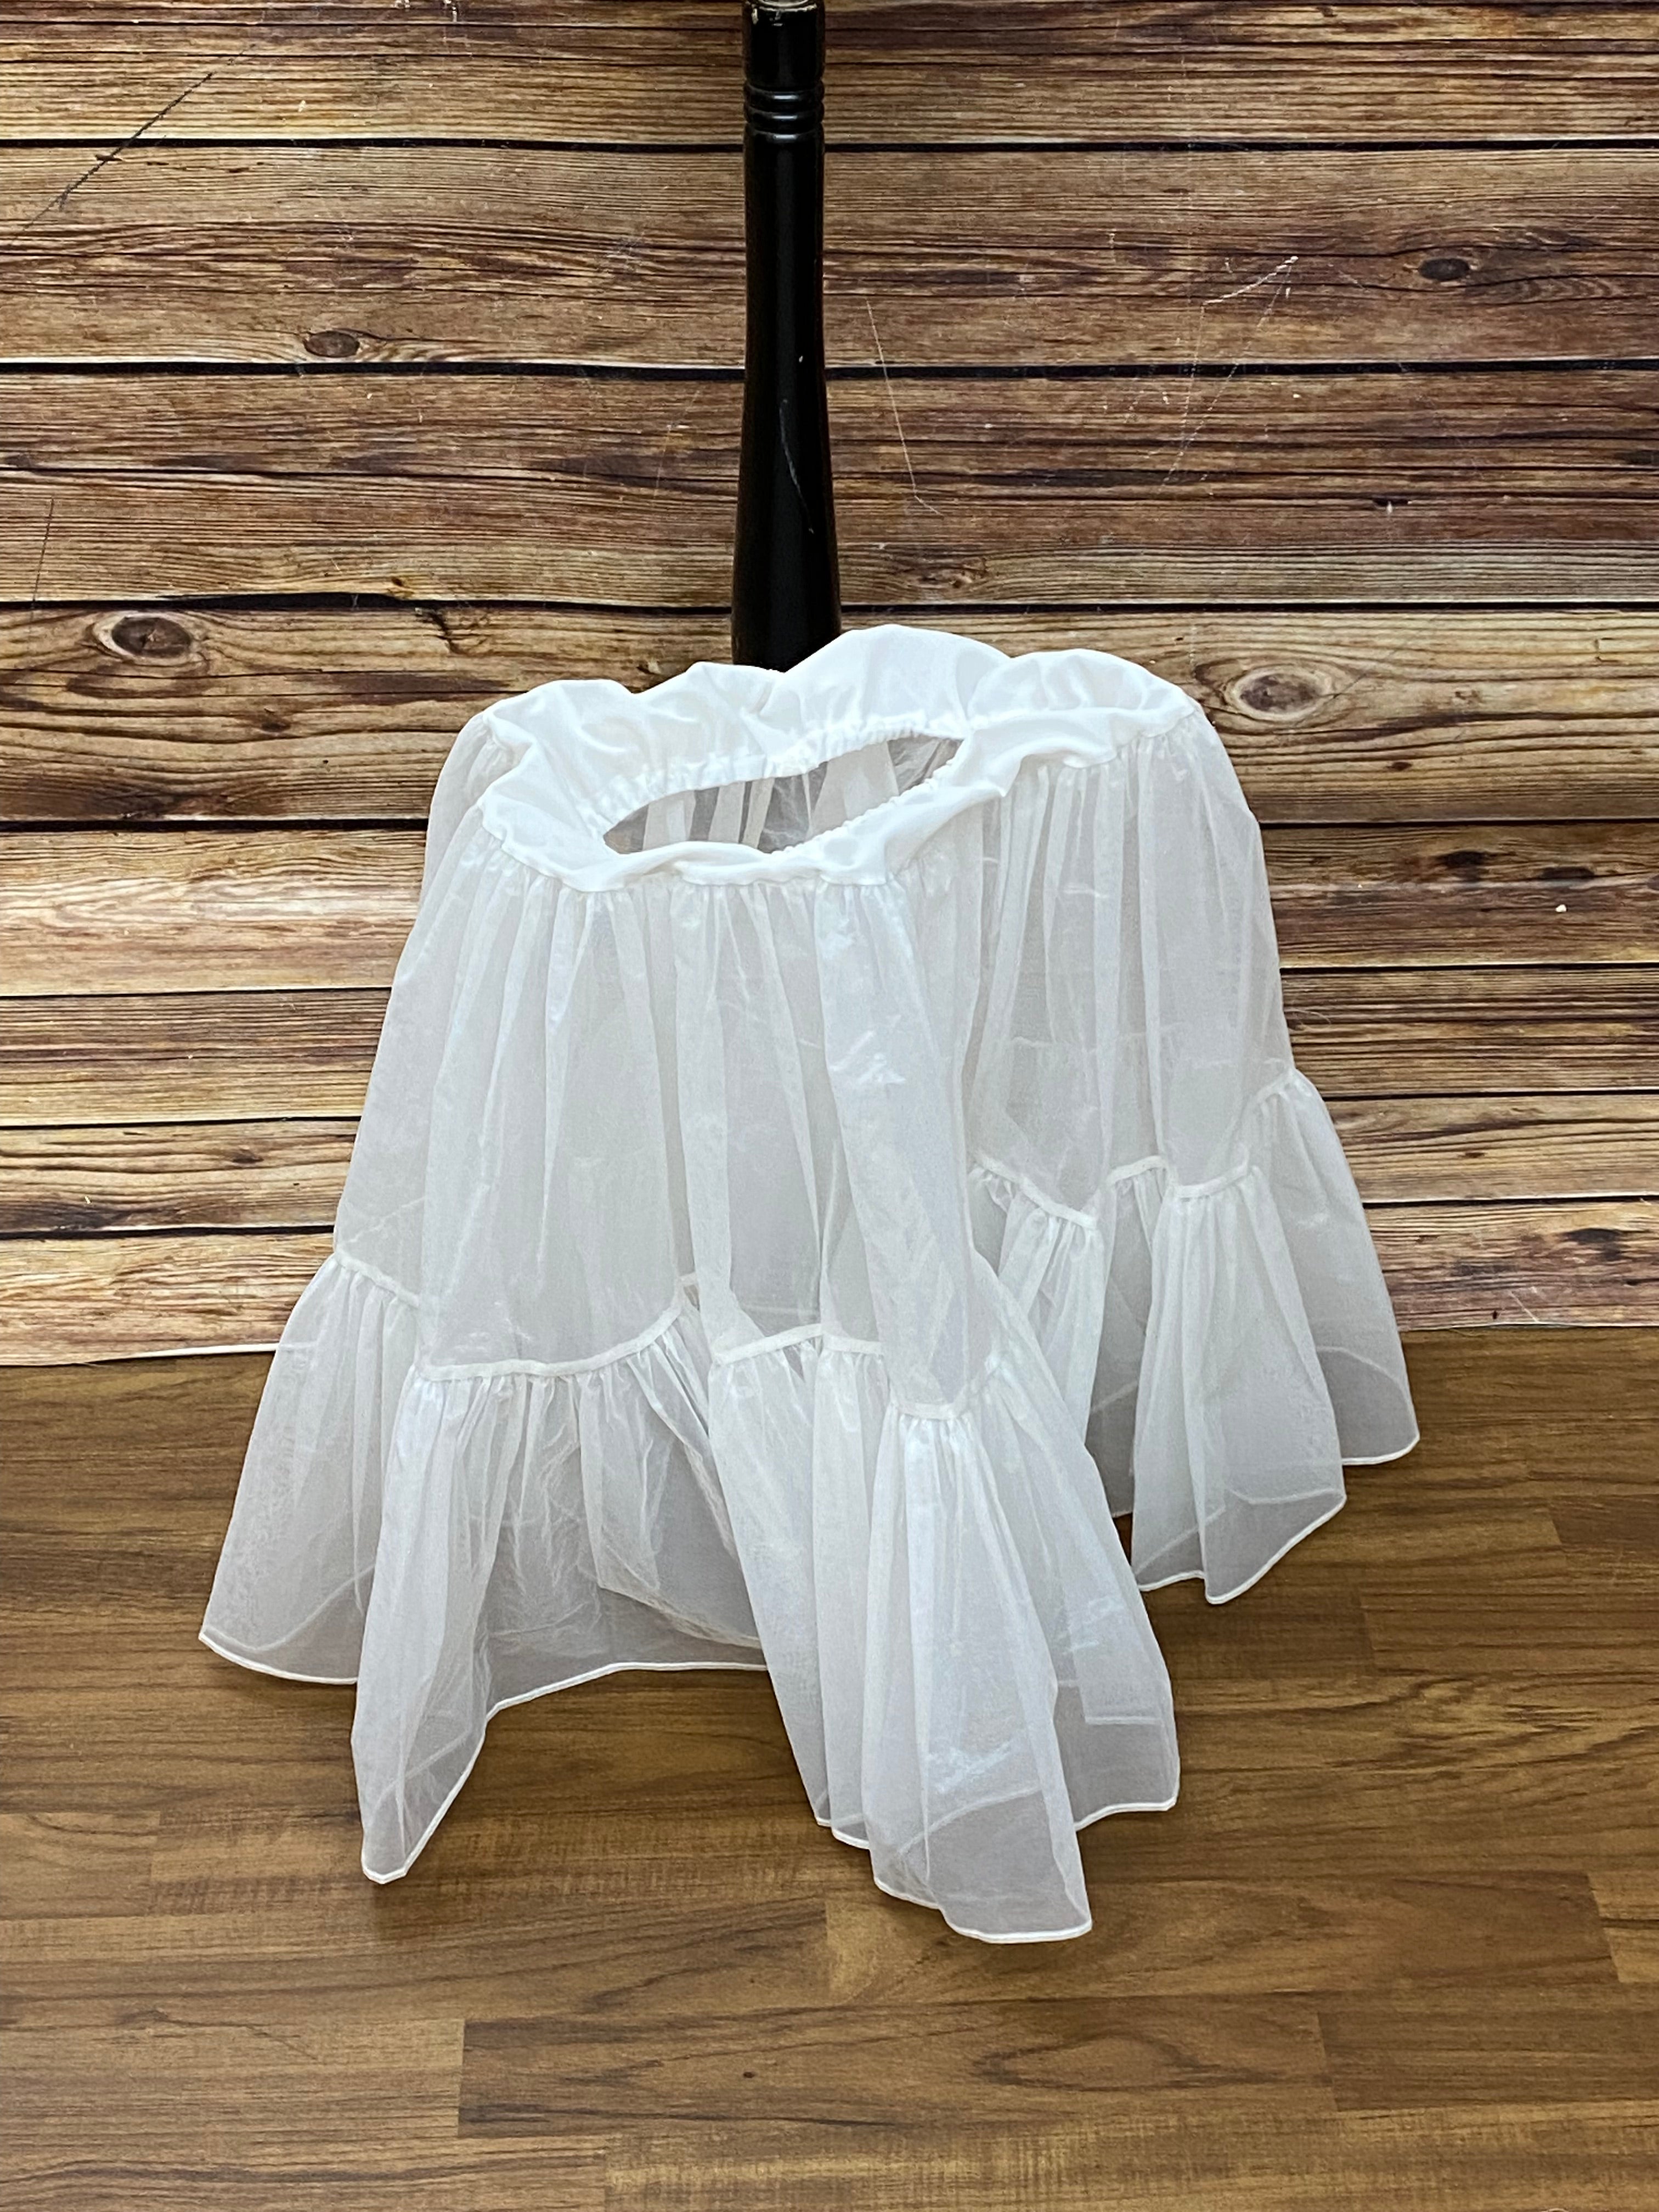 Schöner steifer Petticoat in der Farbe weiß Gr.S/M